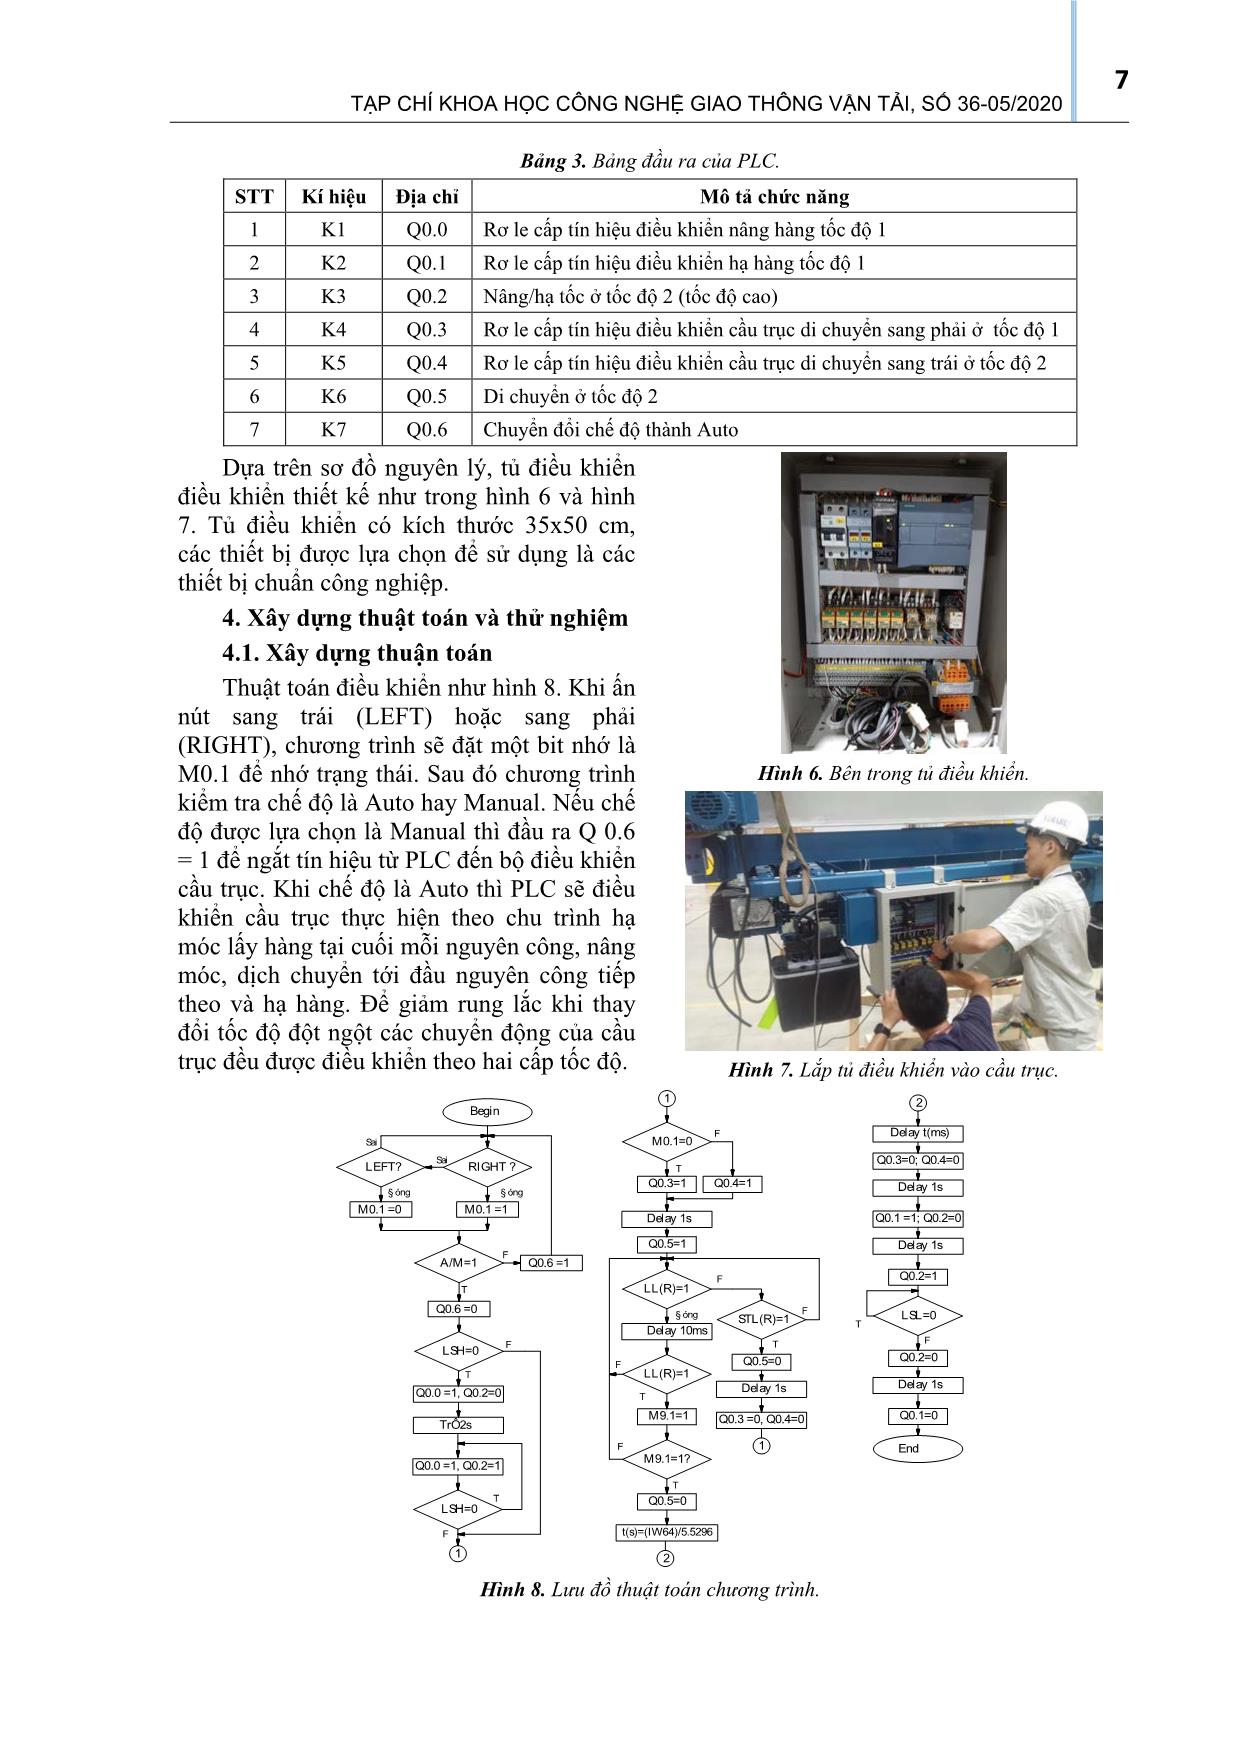 Nghiên cứu cải tiến dây chuyền vận chuyển đa cầu trục sử dụng bộ logic khả trình PLC trang 5